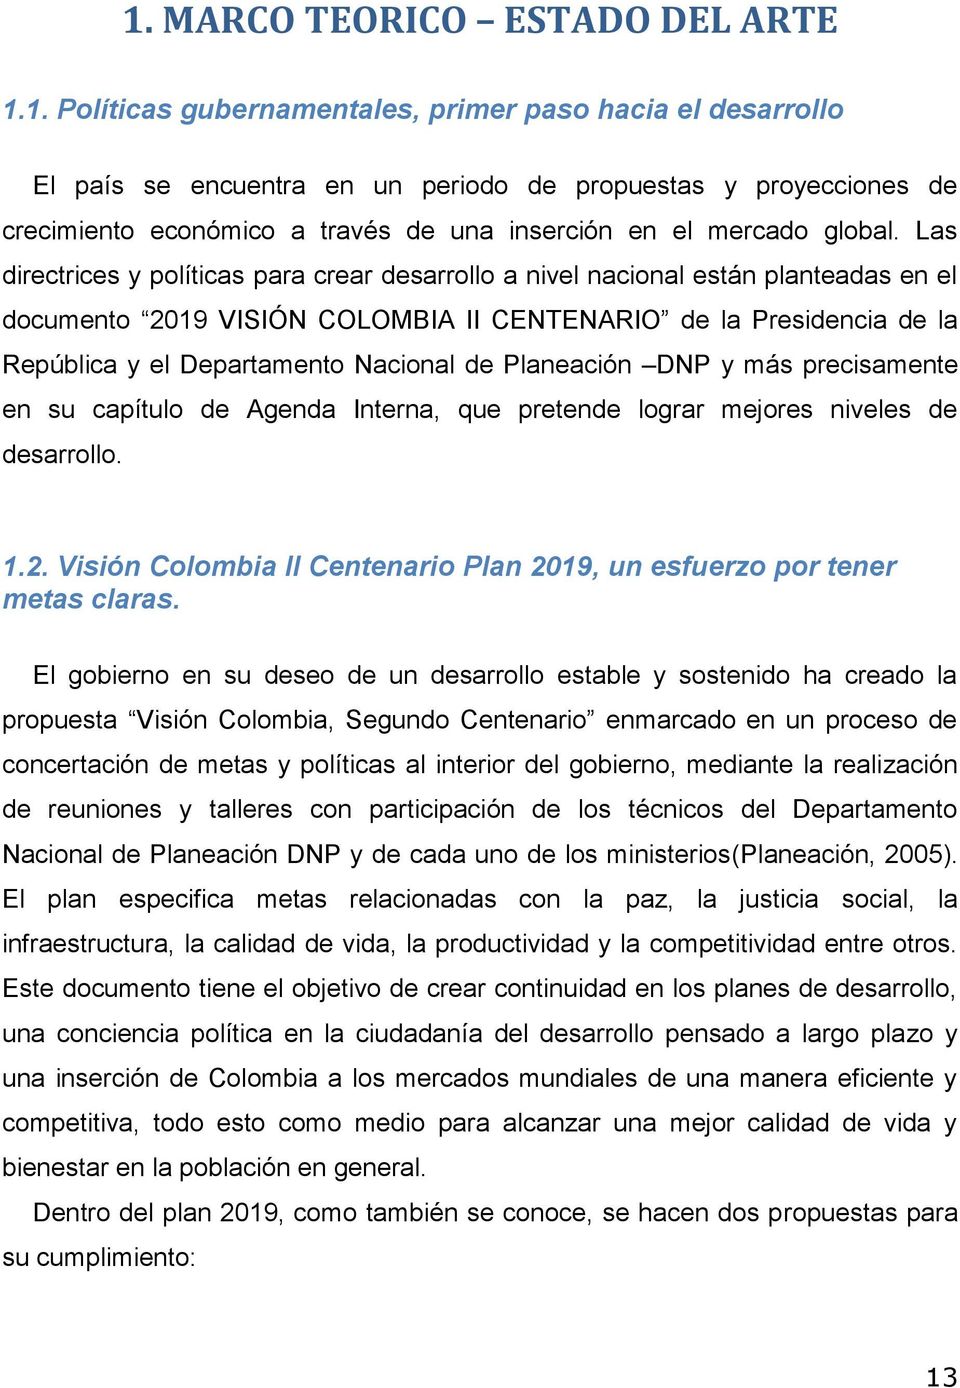 Planeación DNP y más precisamente en su capítulo de Agenda Interna, que pretende lograr mejores niveles de desarrollo. 1.2. Visión Colombia II Centenario Plan 2019, un esfuerzo por tener metas claras.